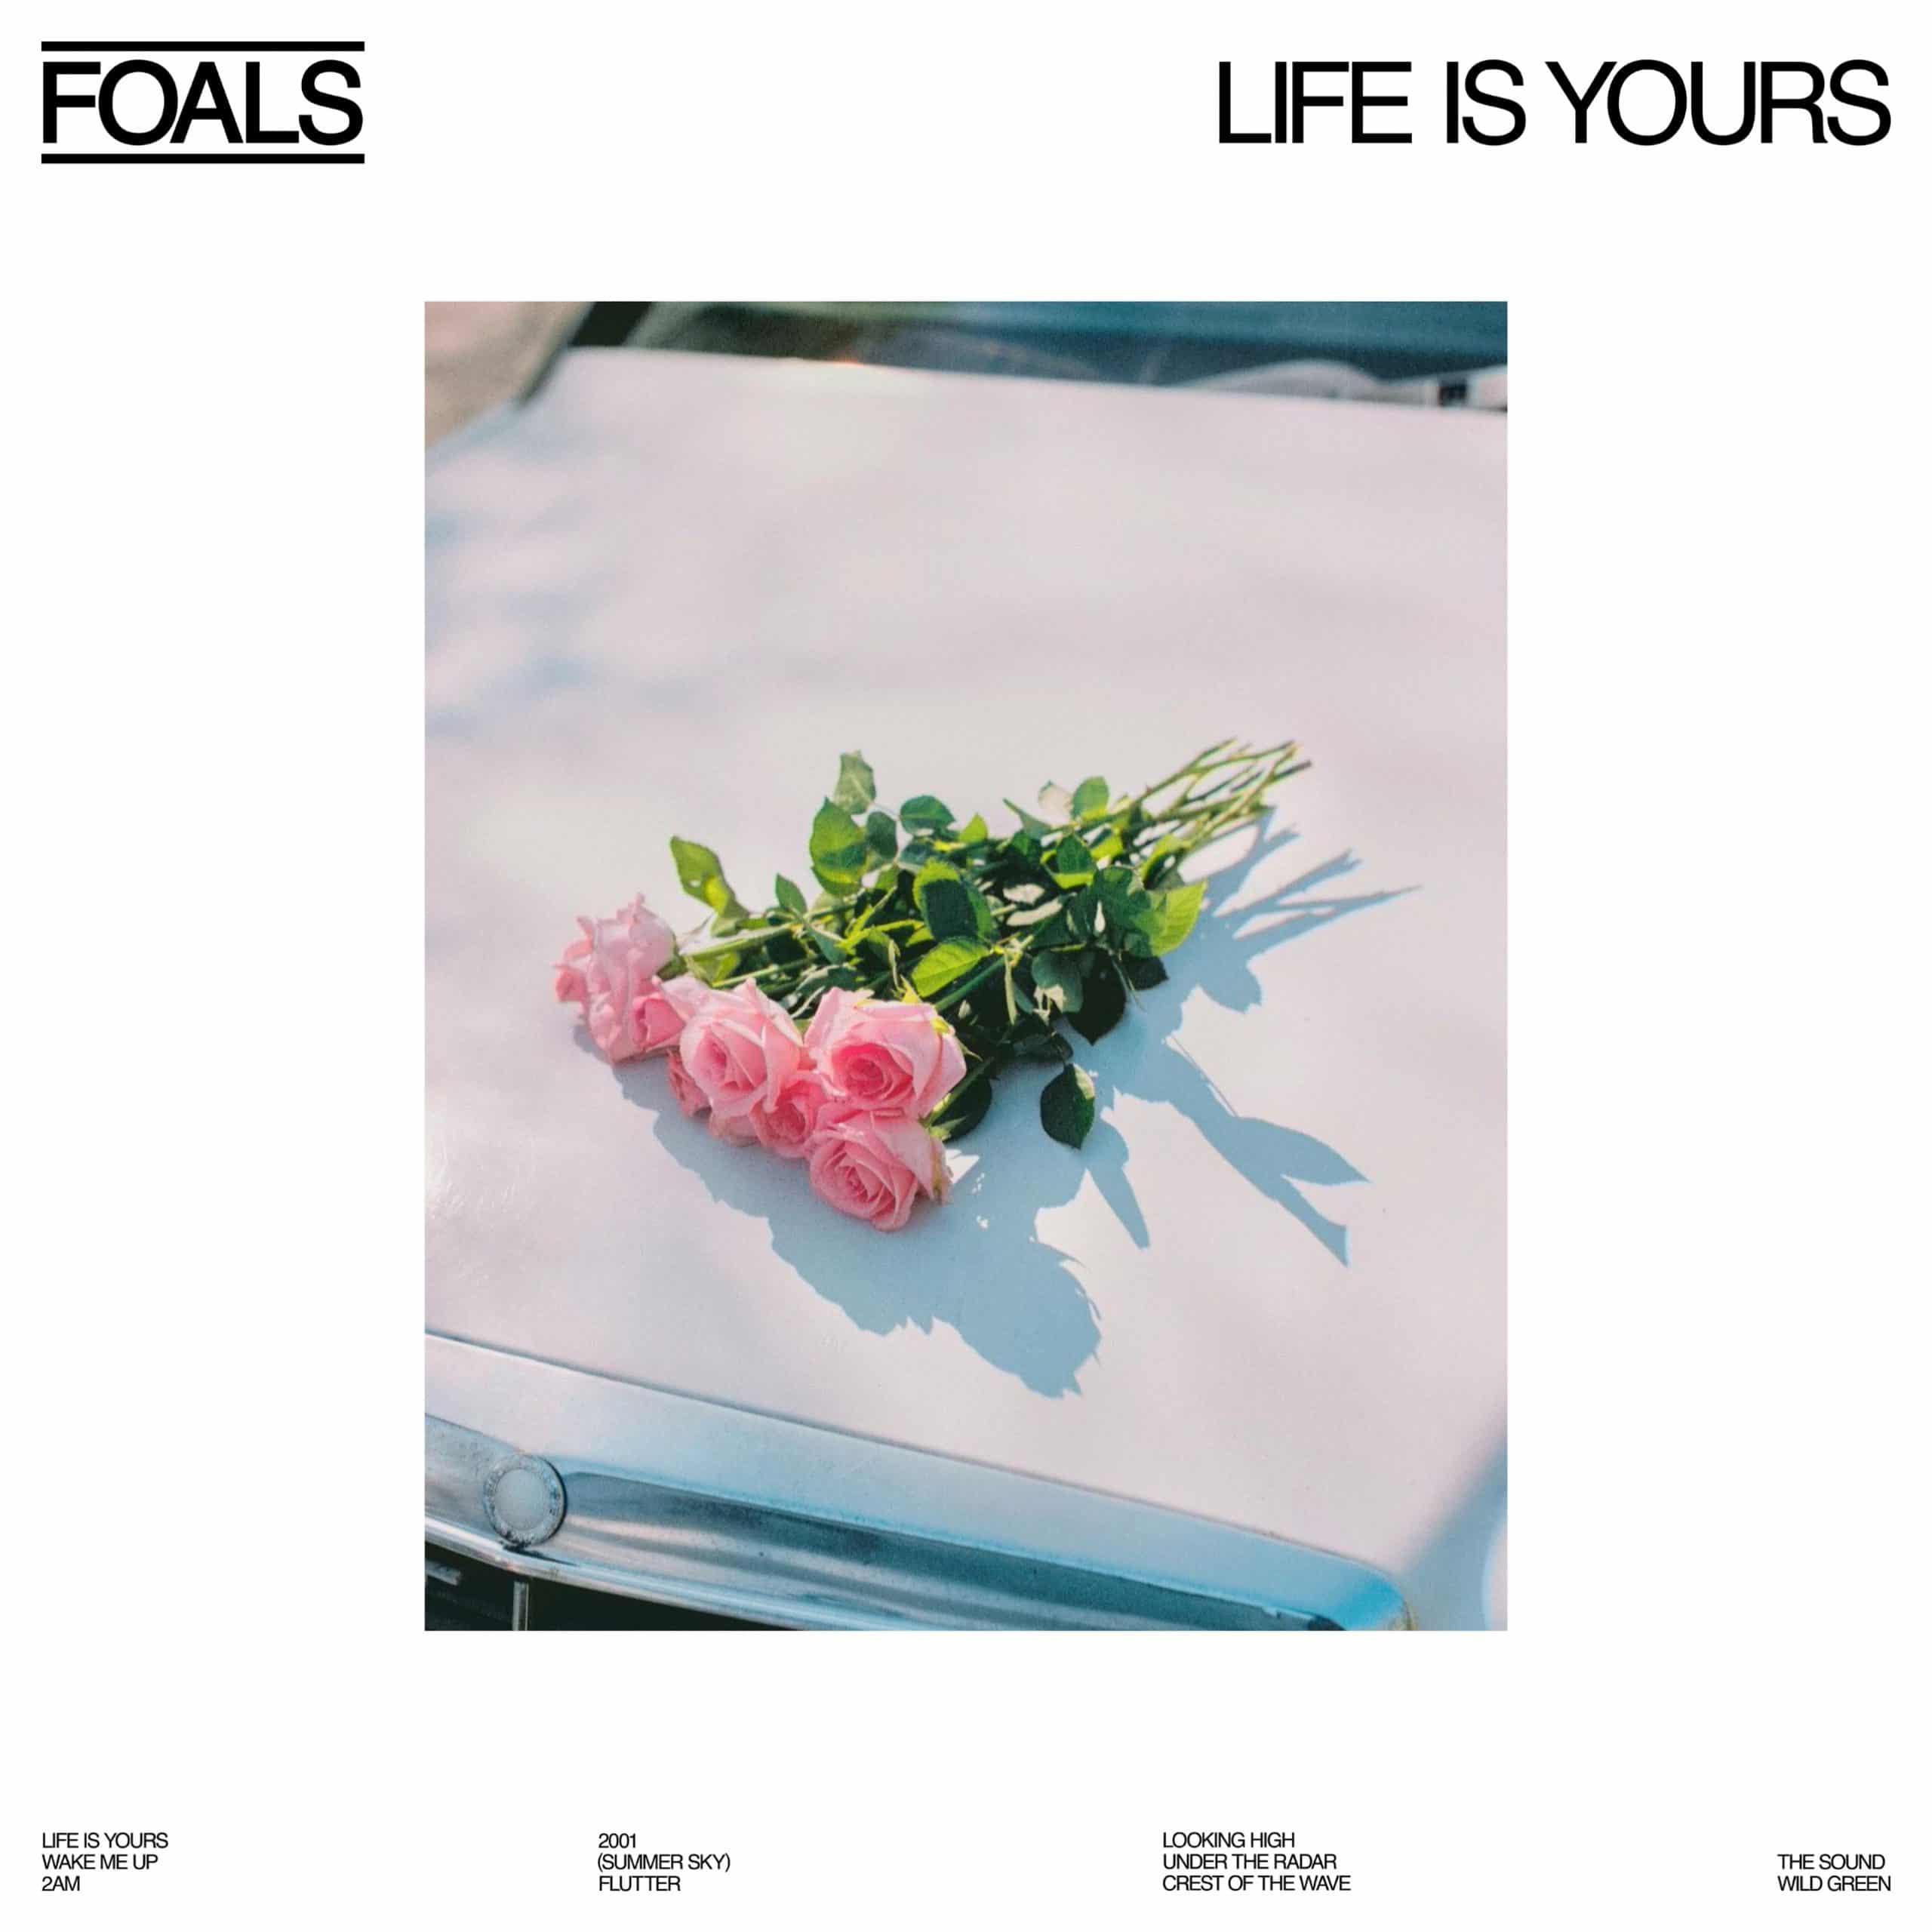 foals life is yours album artwork